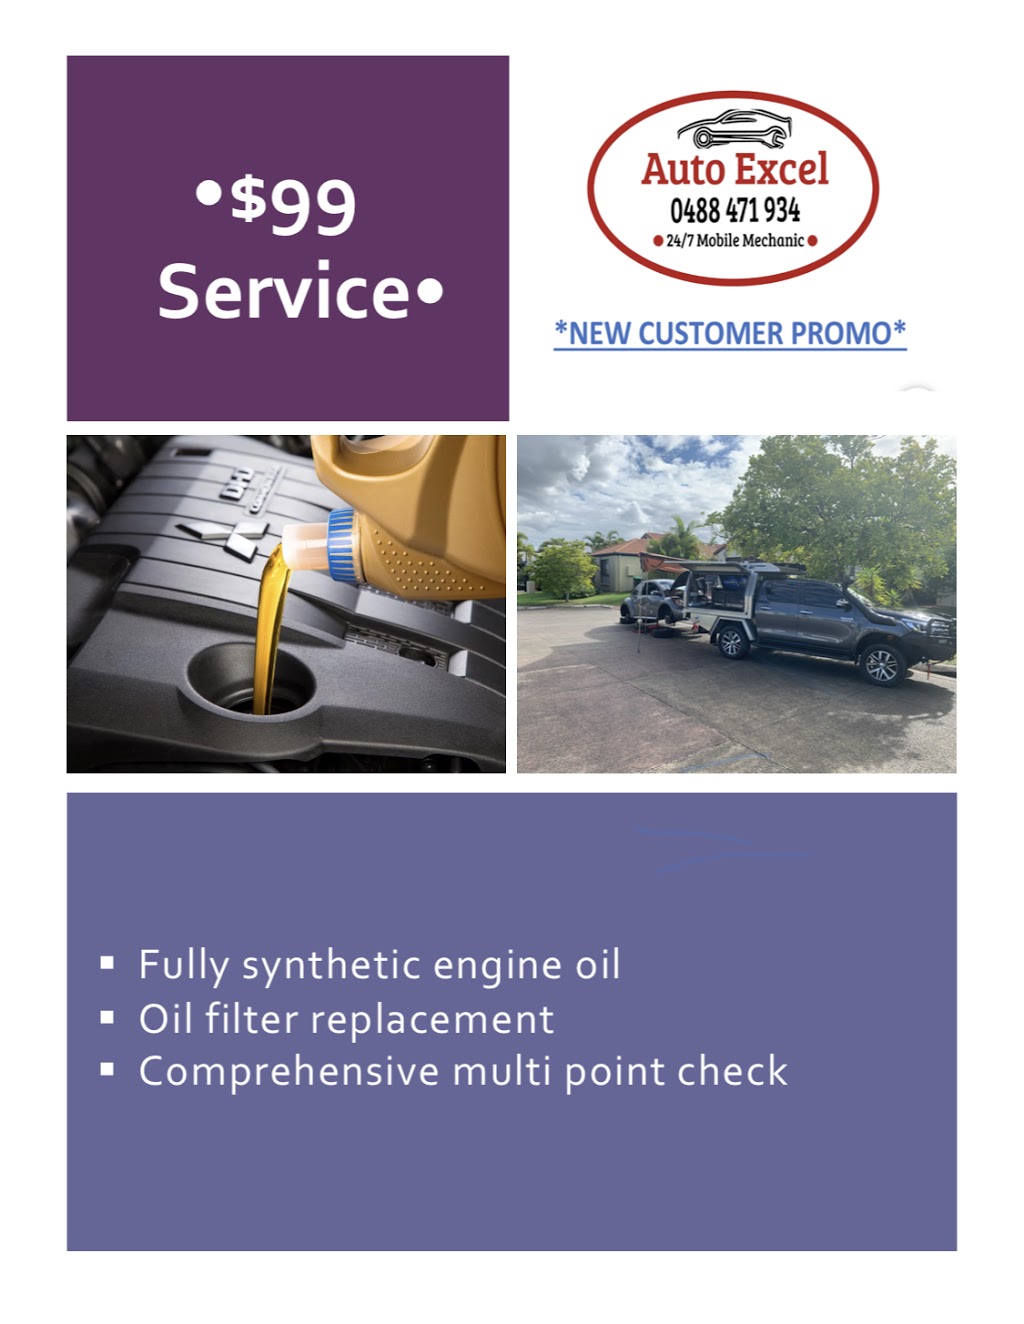 Auto Excel (24/7 Mobile Mechanic) | car repair | 12 Sumatra Ct, Parrearra QLD 4575, Australia | 0488471934 OR +61 488 471 934